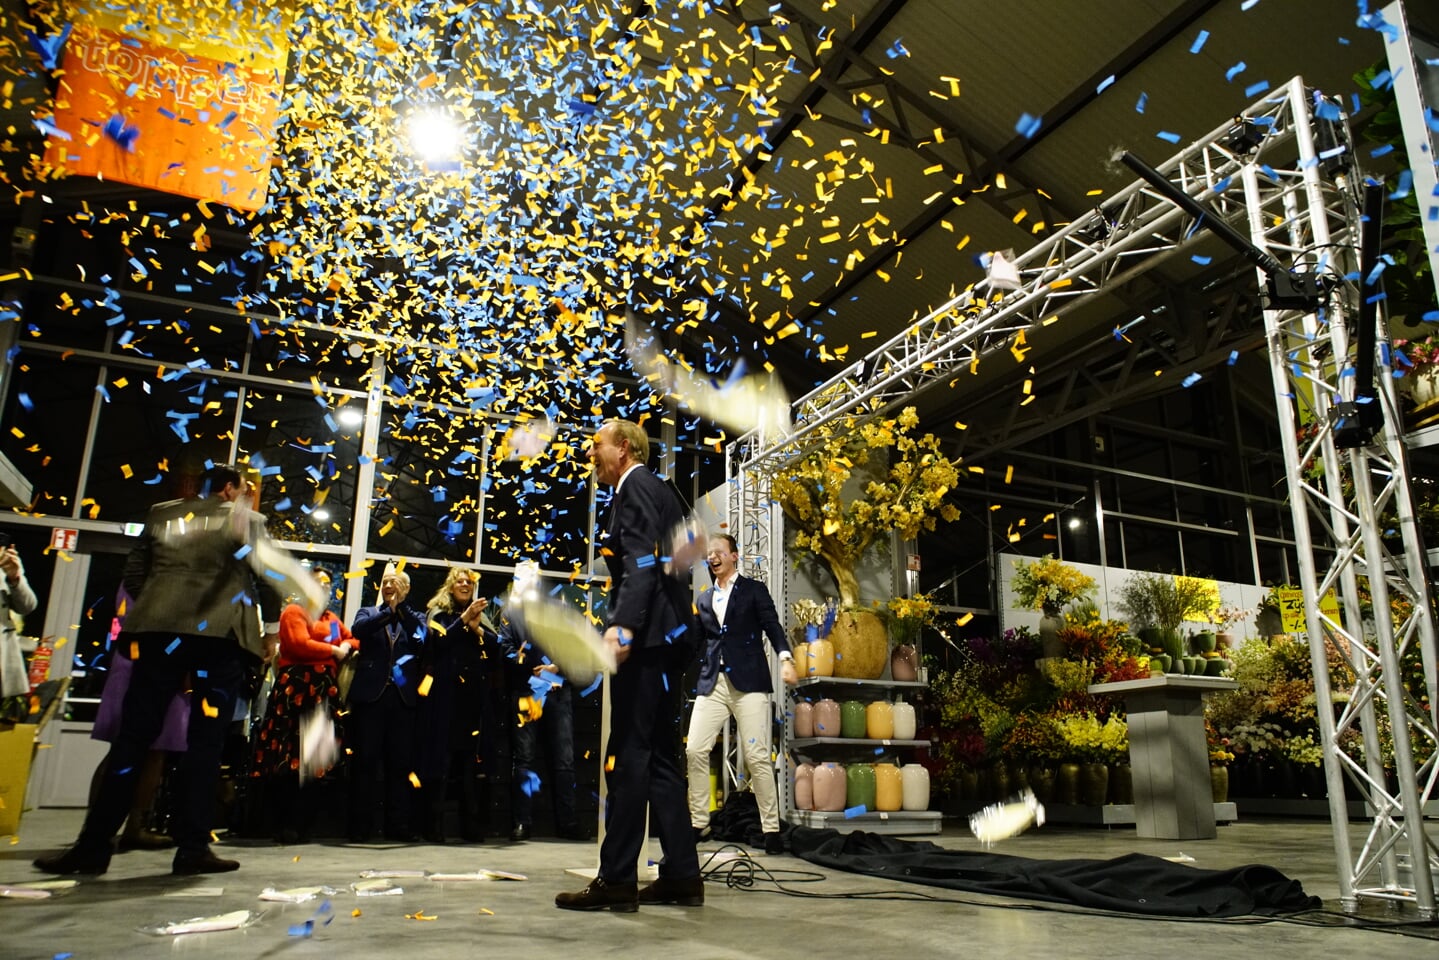 Met een feestelijke confetti-regen werd het Voordeel Tuincentrum geopend.